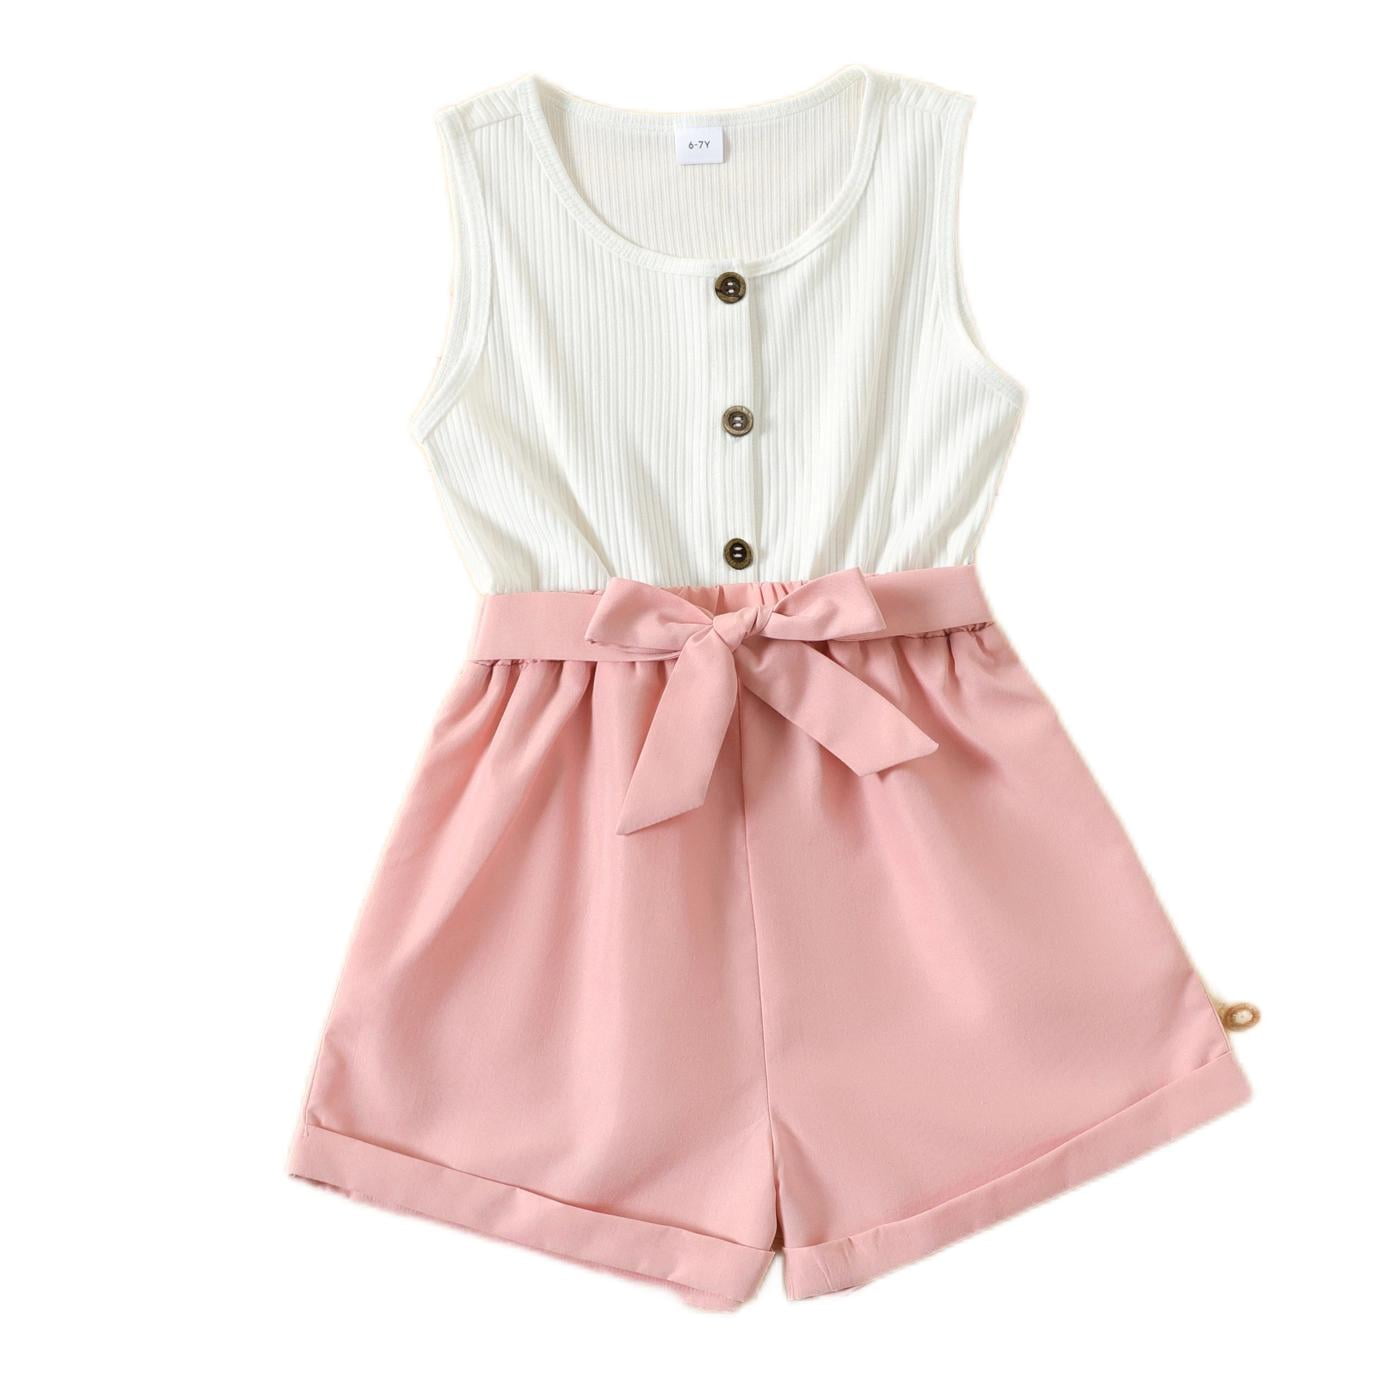 Toddler Girl Schiffy Design Sleeveless Denim Romper Jumpsuit Shorts Only  BDT 1,424.45 PatPat ASIA Mobile